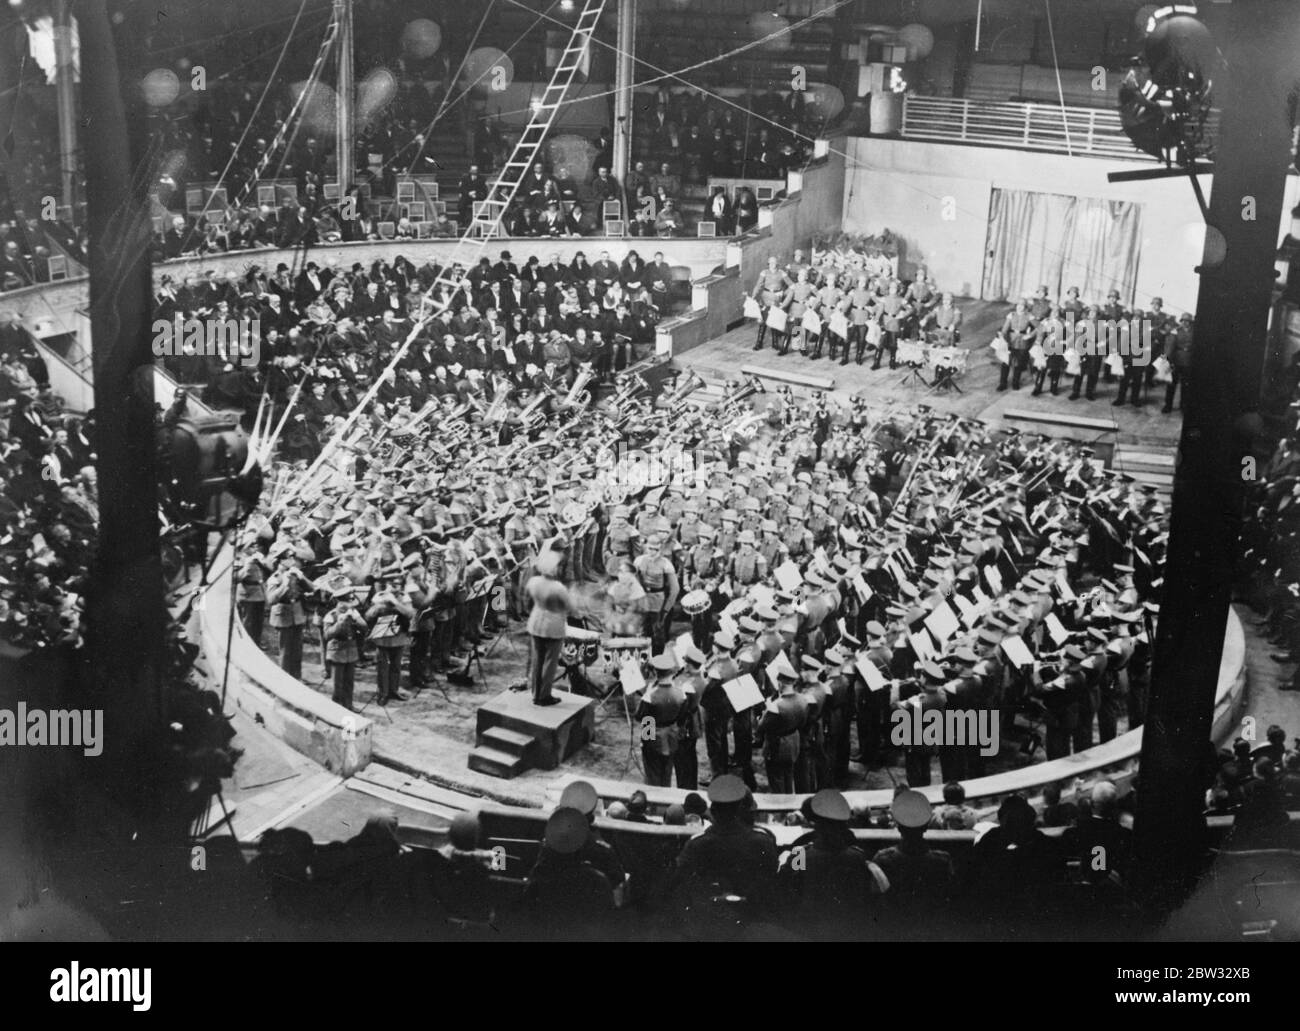 Les groupes militaires allemands jouent pour Berlin Poor . Les groupes combinés des régiments allemands garnison dans la vacuité de Berlin ont donné un concert spécial en aide à un fonds de secours pour les pauvres de Berlin . Groupes massés au concert de Berlin . 9 mars 1932 Banque D'Images